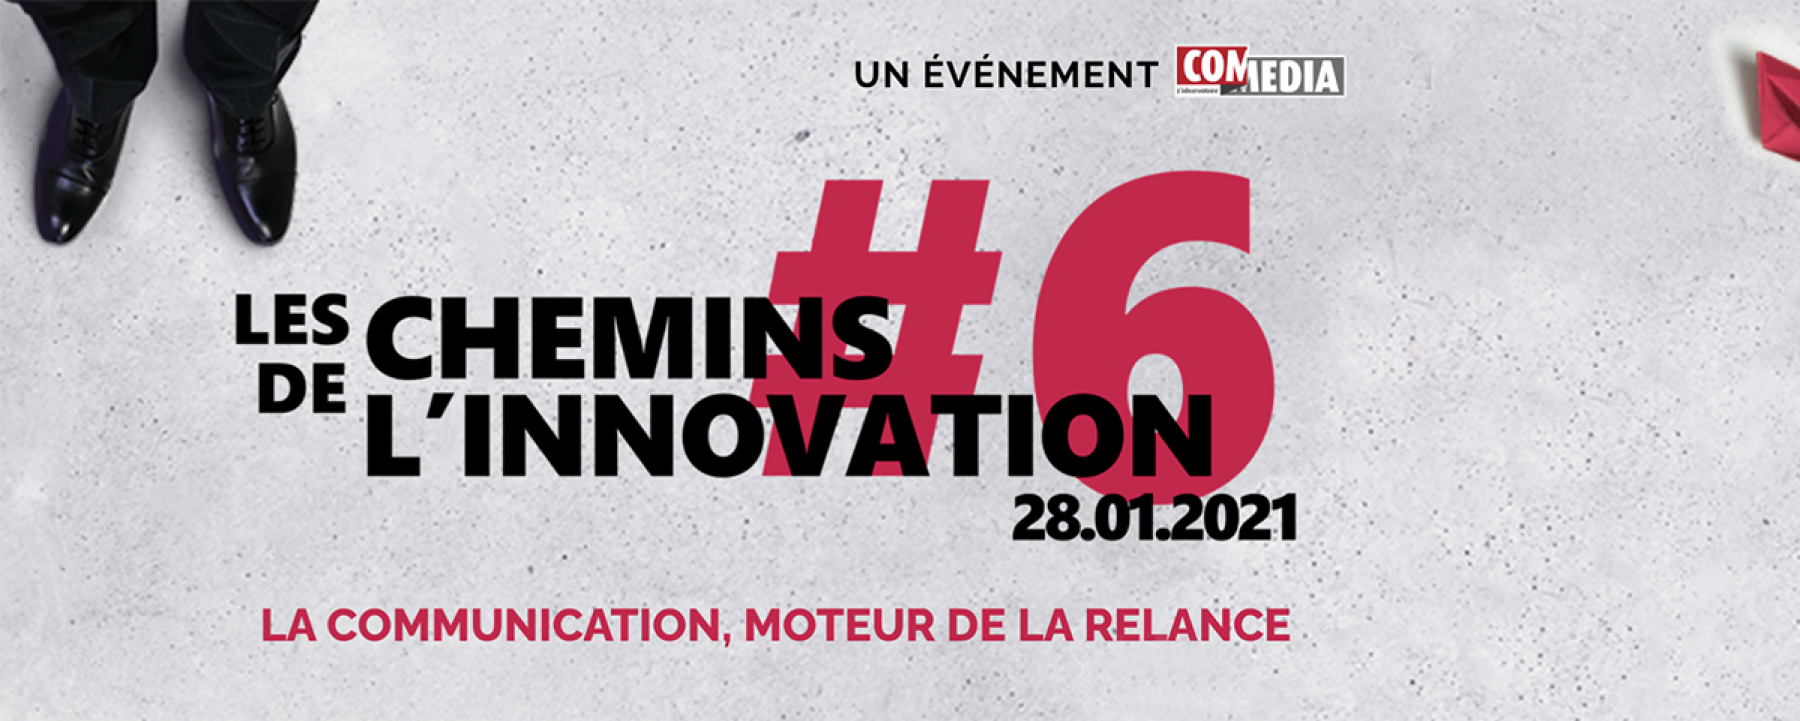 Les Chemins de l'innovation #6, un événement organisé par l'Observatoire ComMedia, le 28 janvier